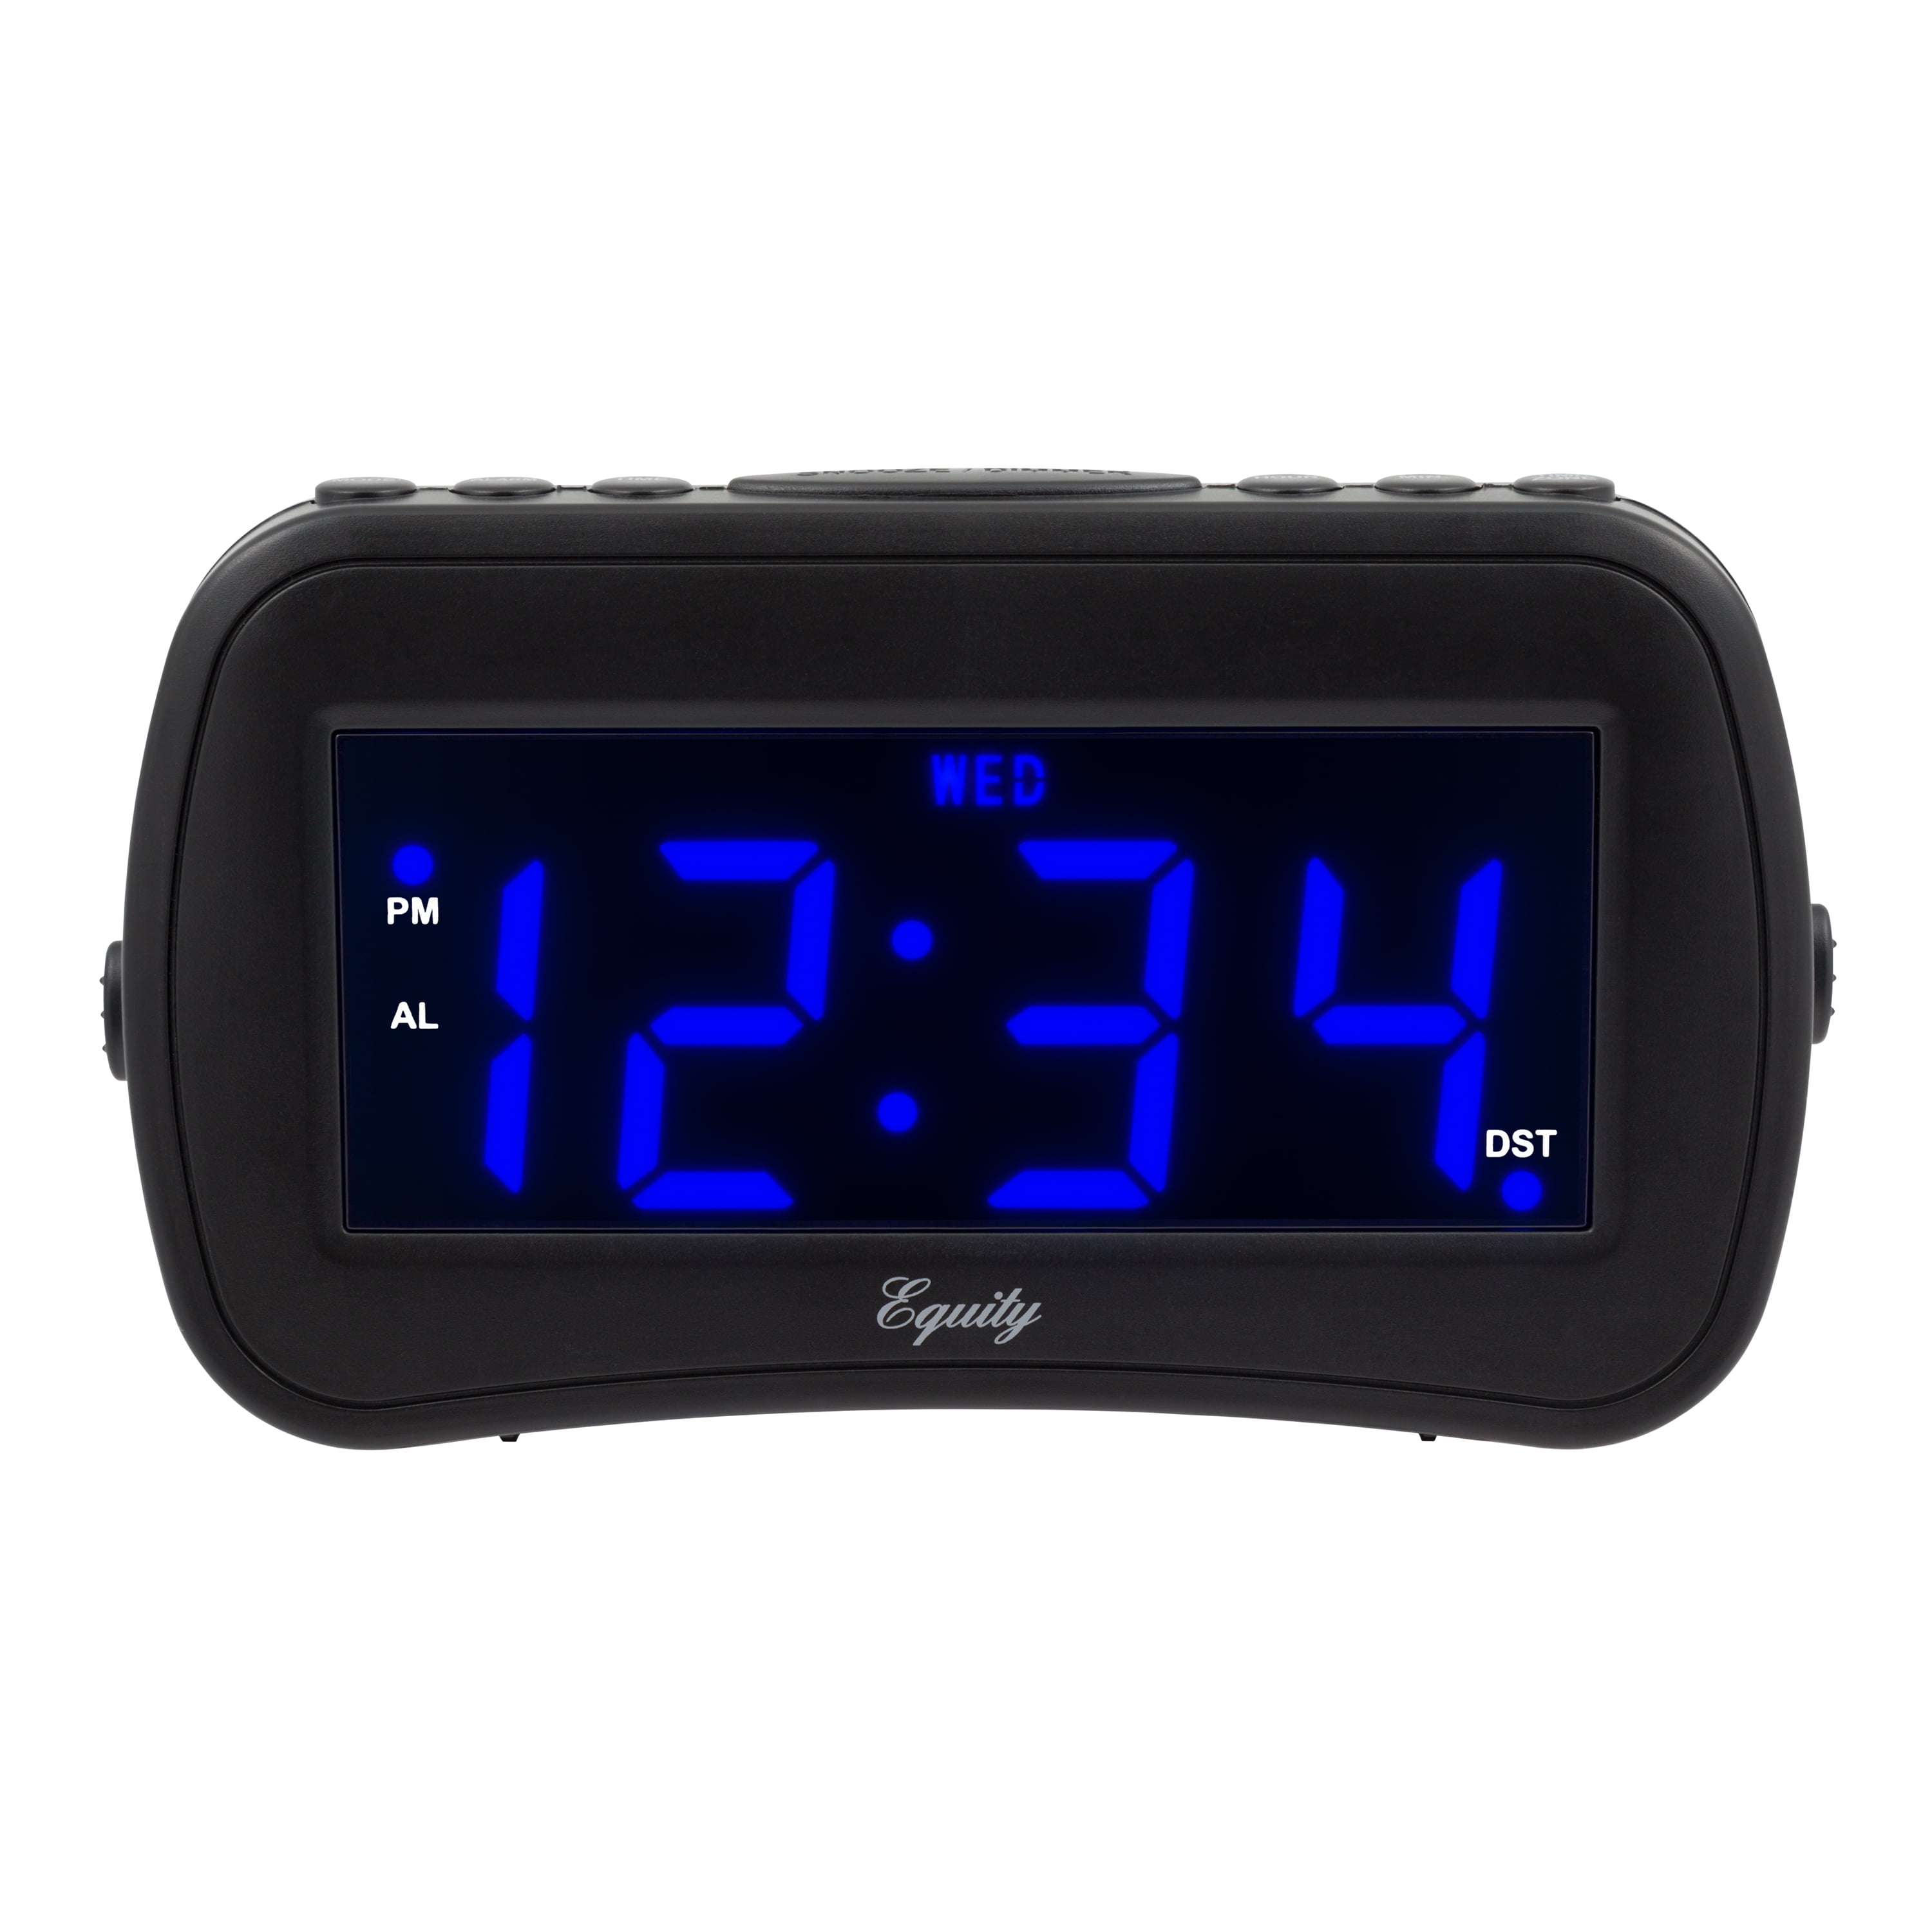 Equity by La Crosse 1.4-Inch Day of Week Insta-Set Alarm Clock, model 30022